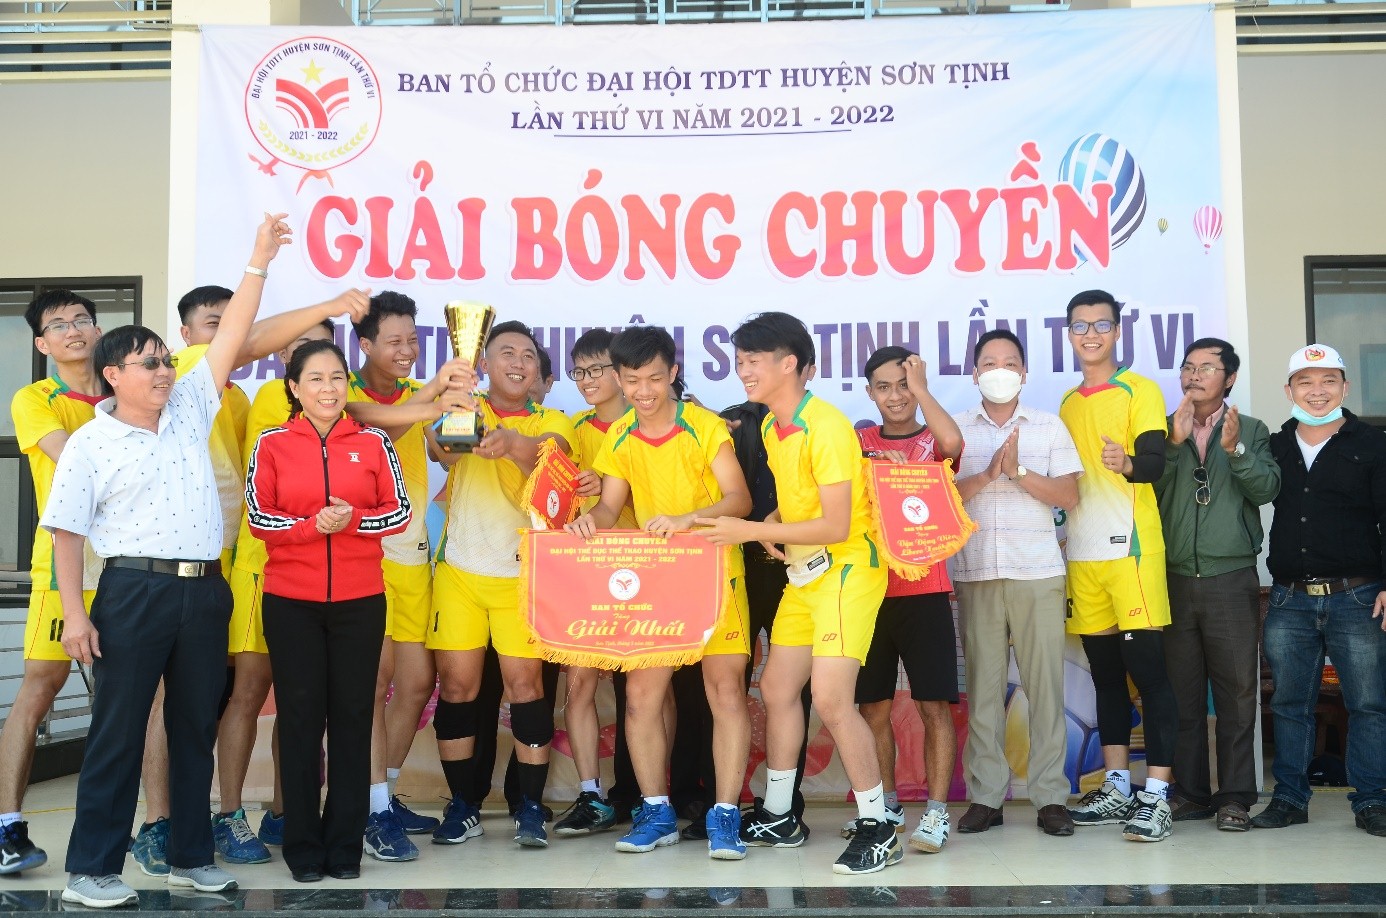 Bế mạc giải bóng chuyền nam Đại hội TDTT huyện Sơn Tịnh lần thứ VI năm 2022